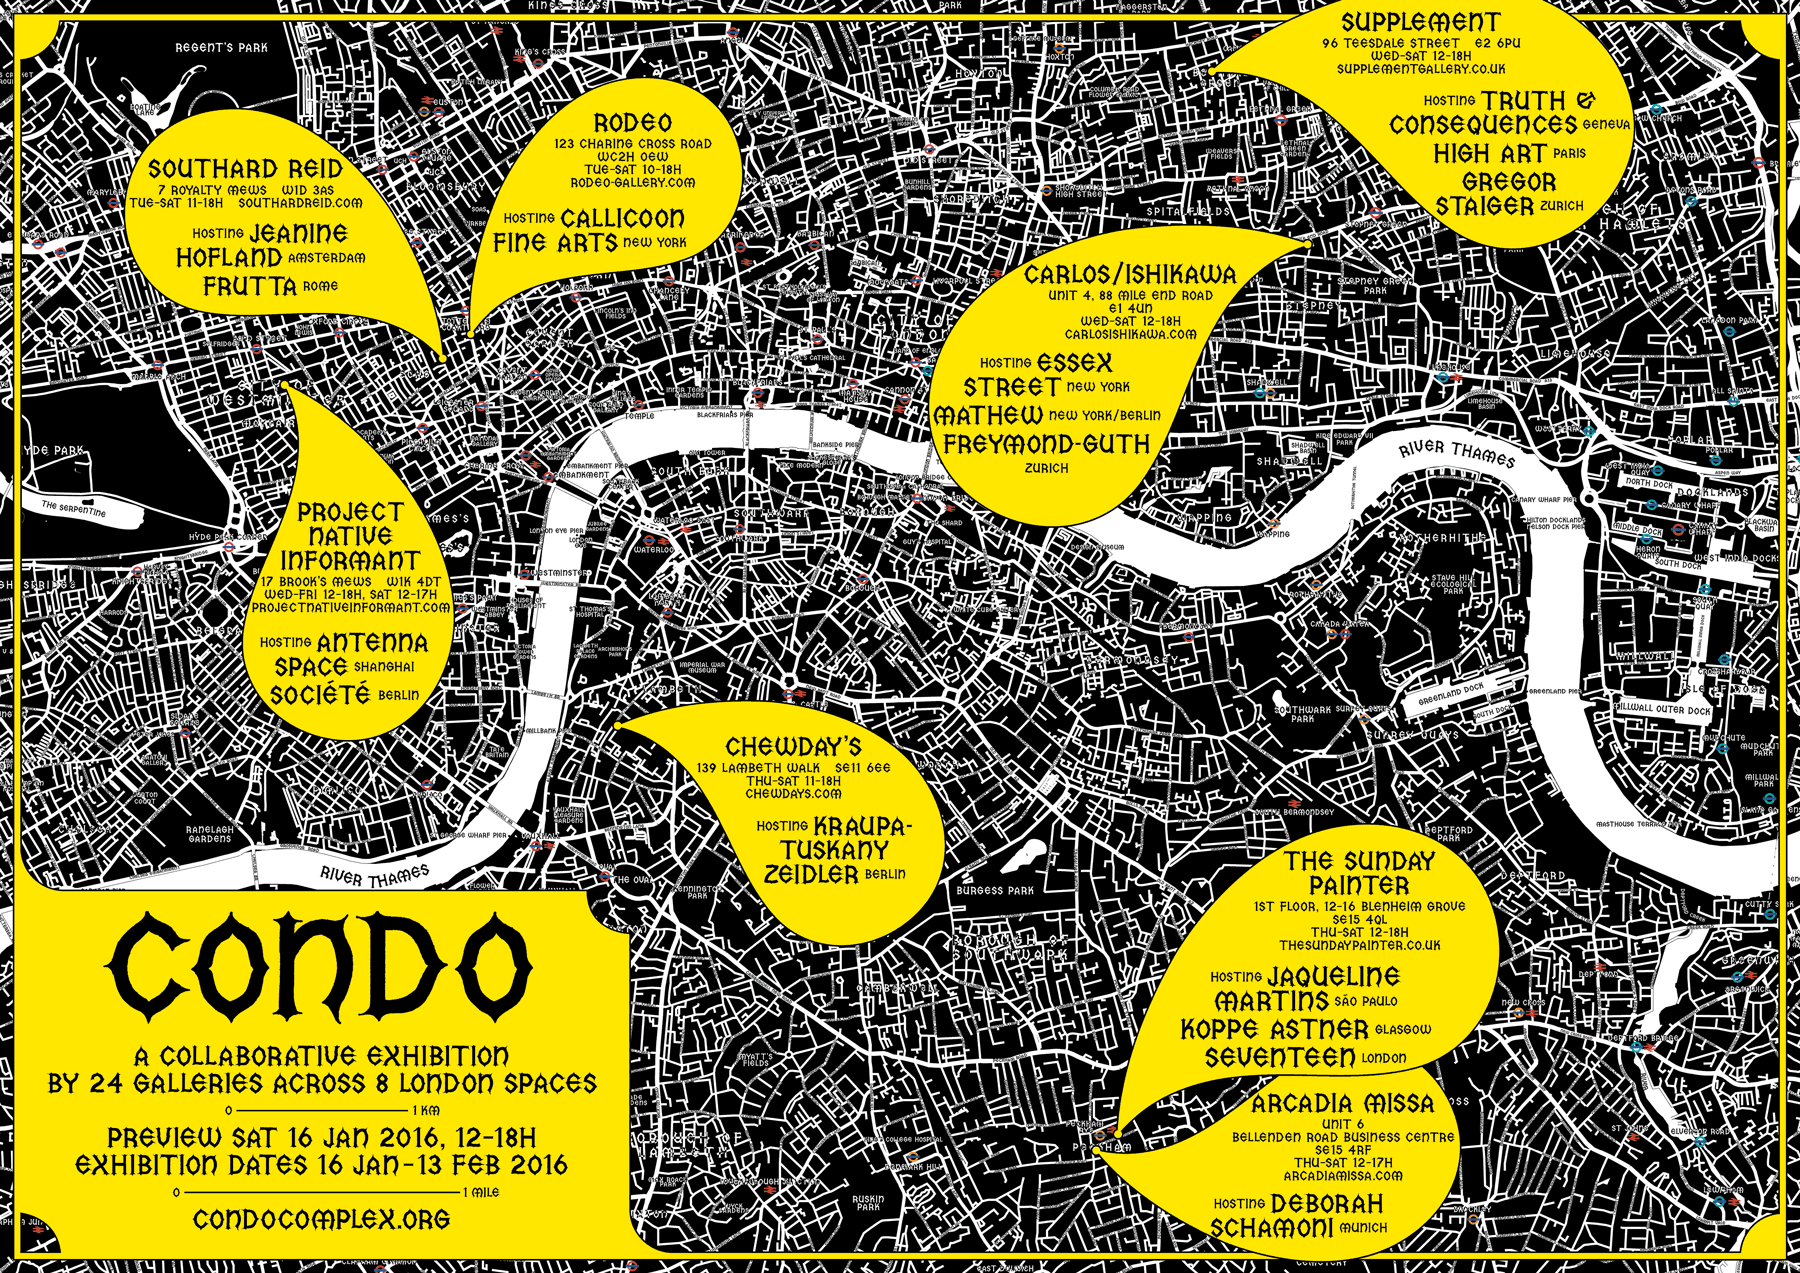 Condo London 2016 - HIGH ART